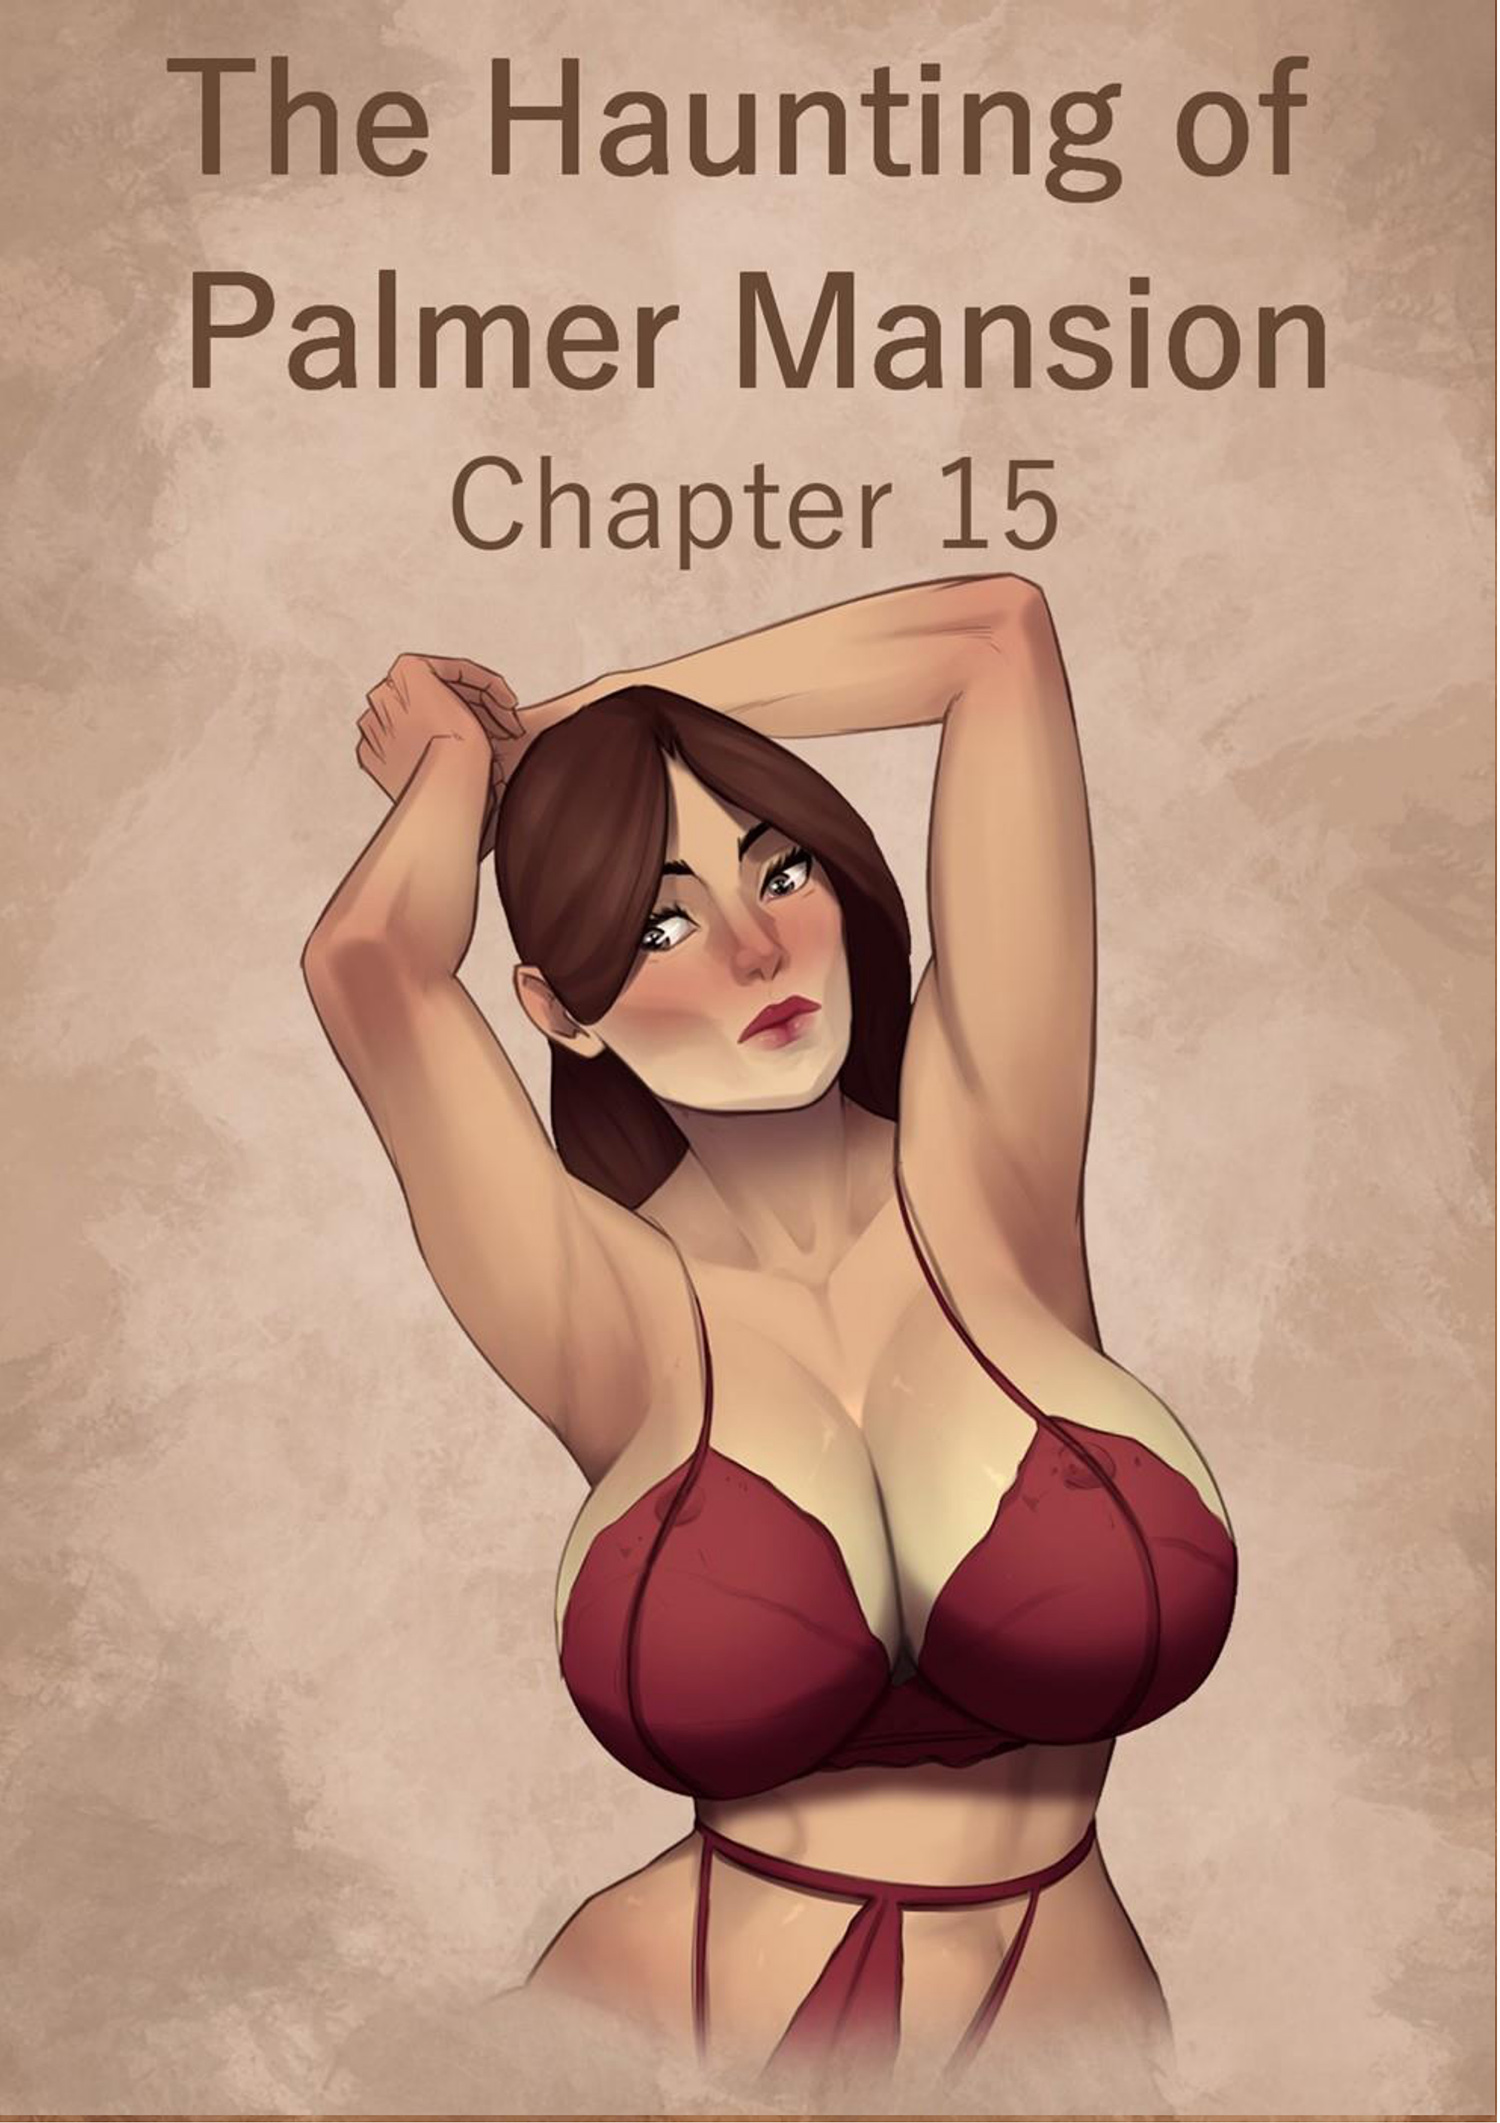 El EMBRUJO de la MANSION Palmer parte 15